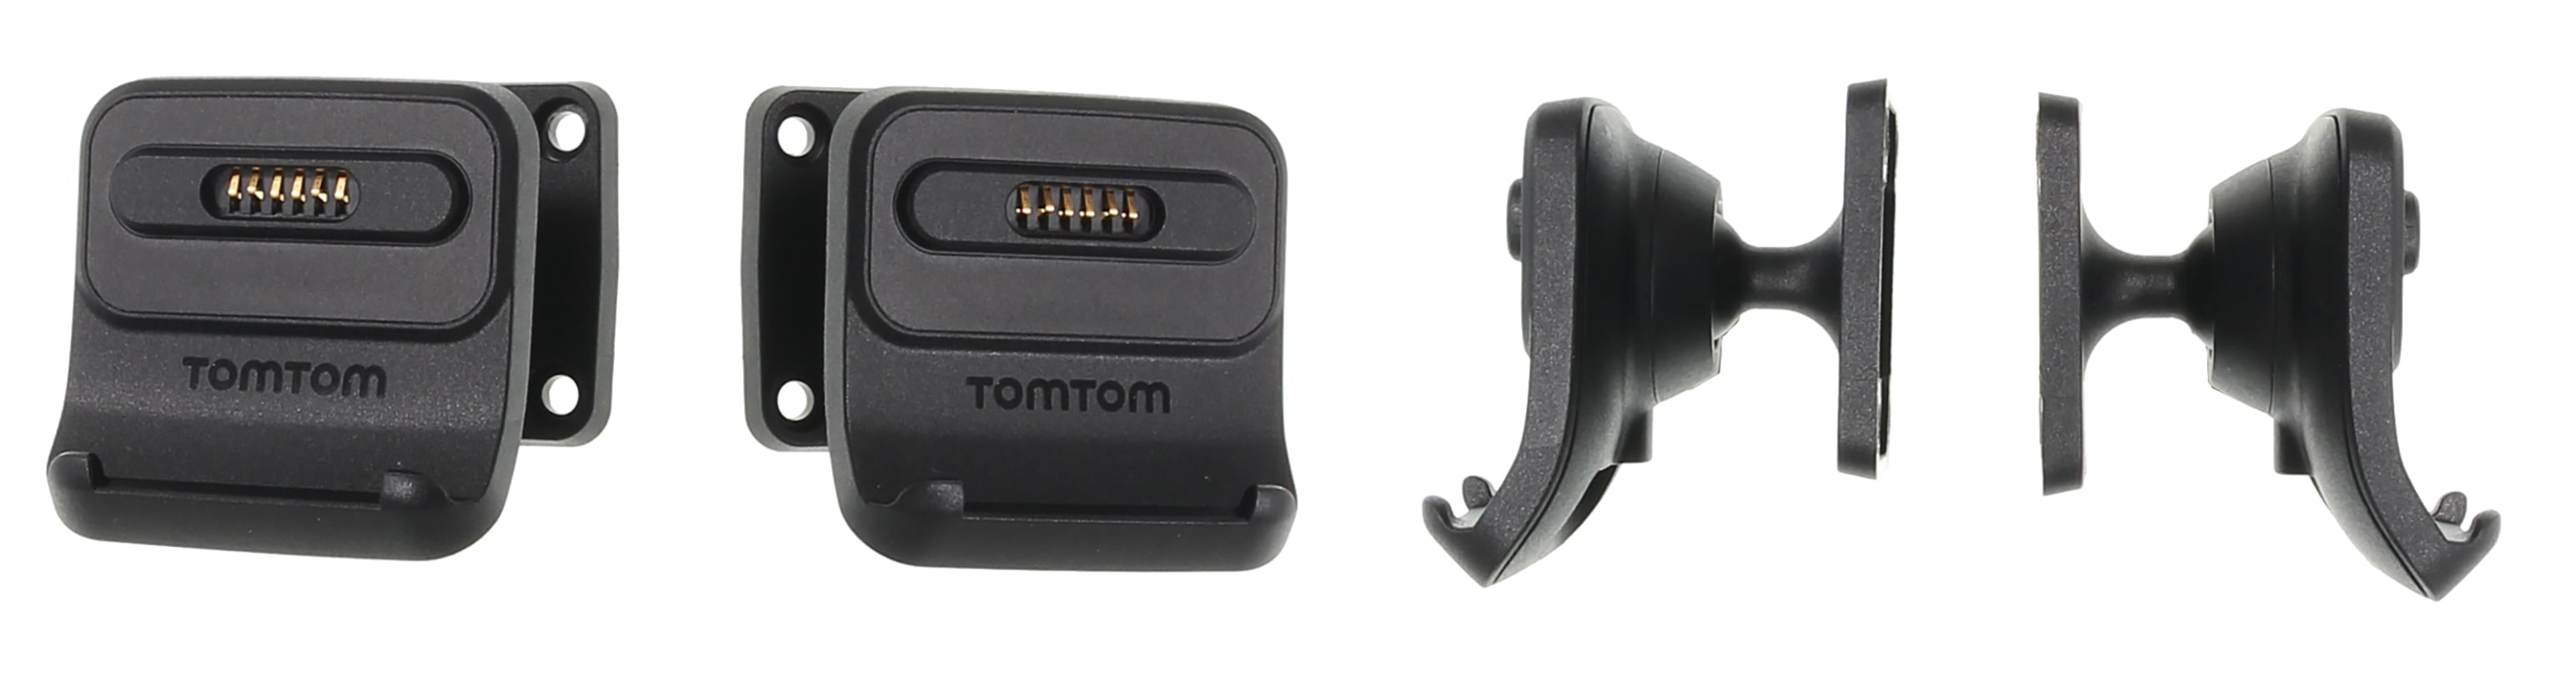 Active Dock Holder with Tilt Swivel for TomTom GO Professional 6250